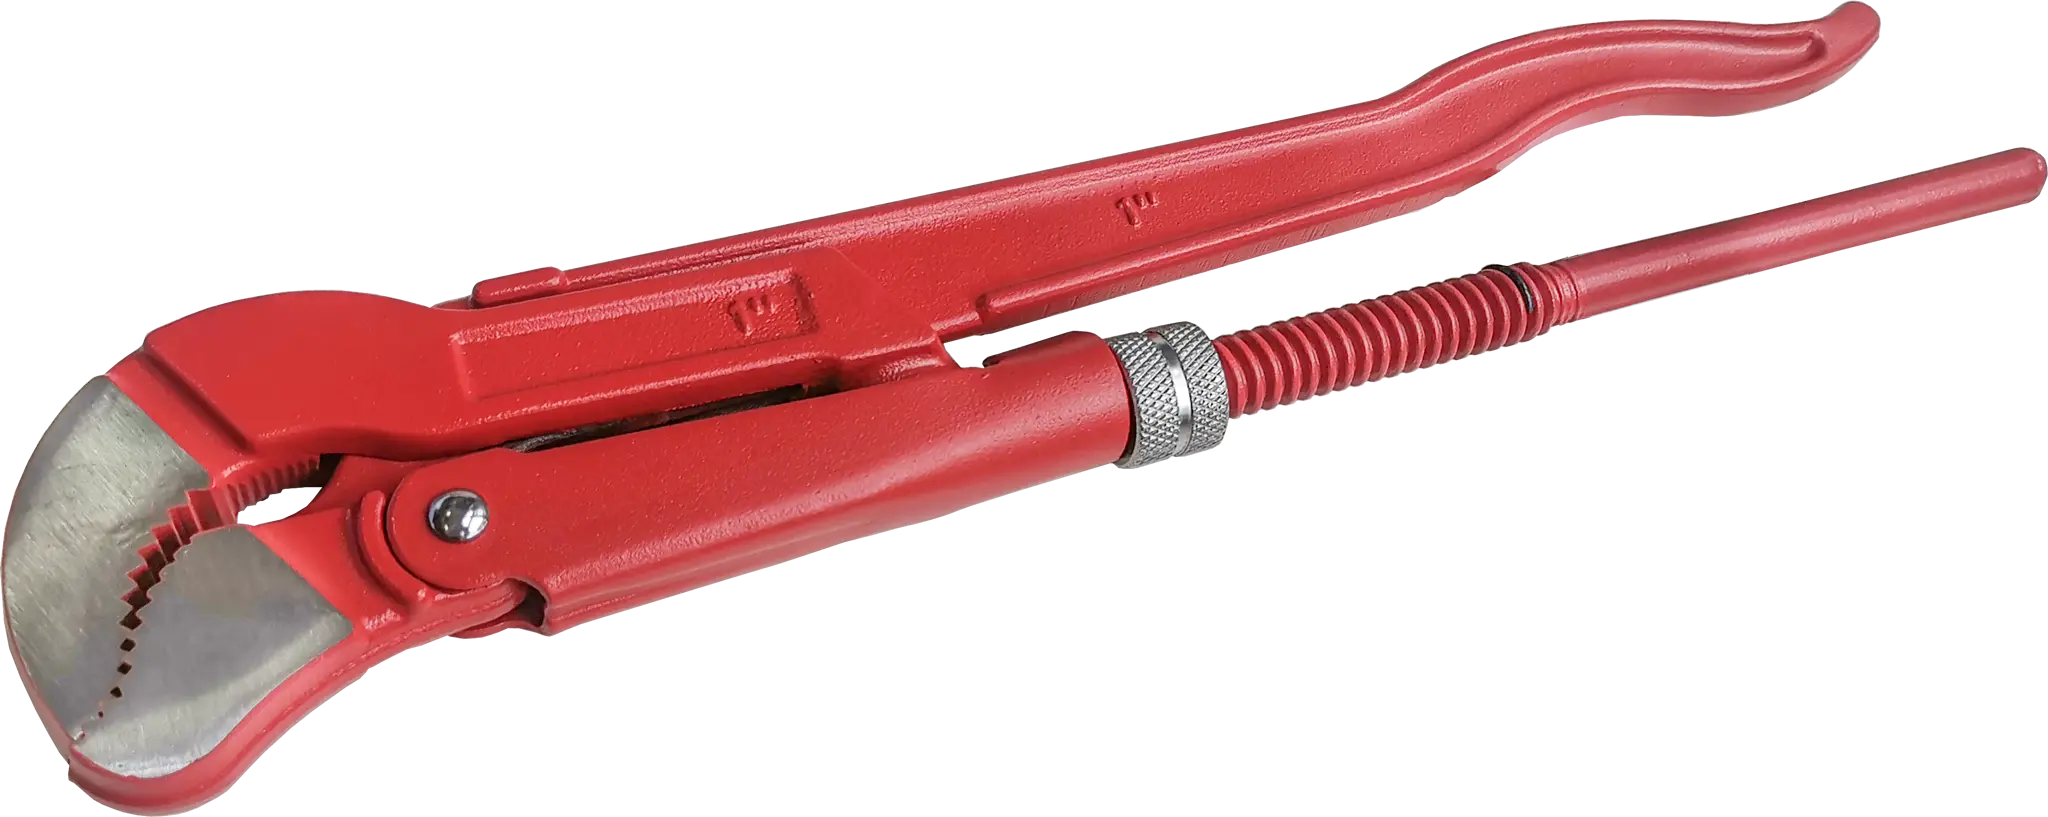 Ключ трубный газовый рычажный S 1045.0254 захват 25 мм, длина 320 мм усиленный трубный ключ izeltas